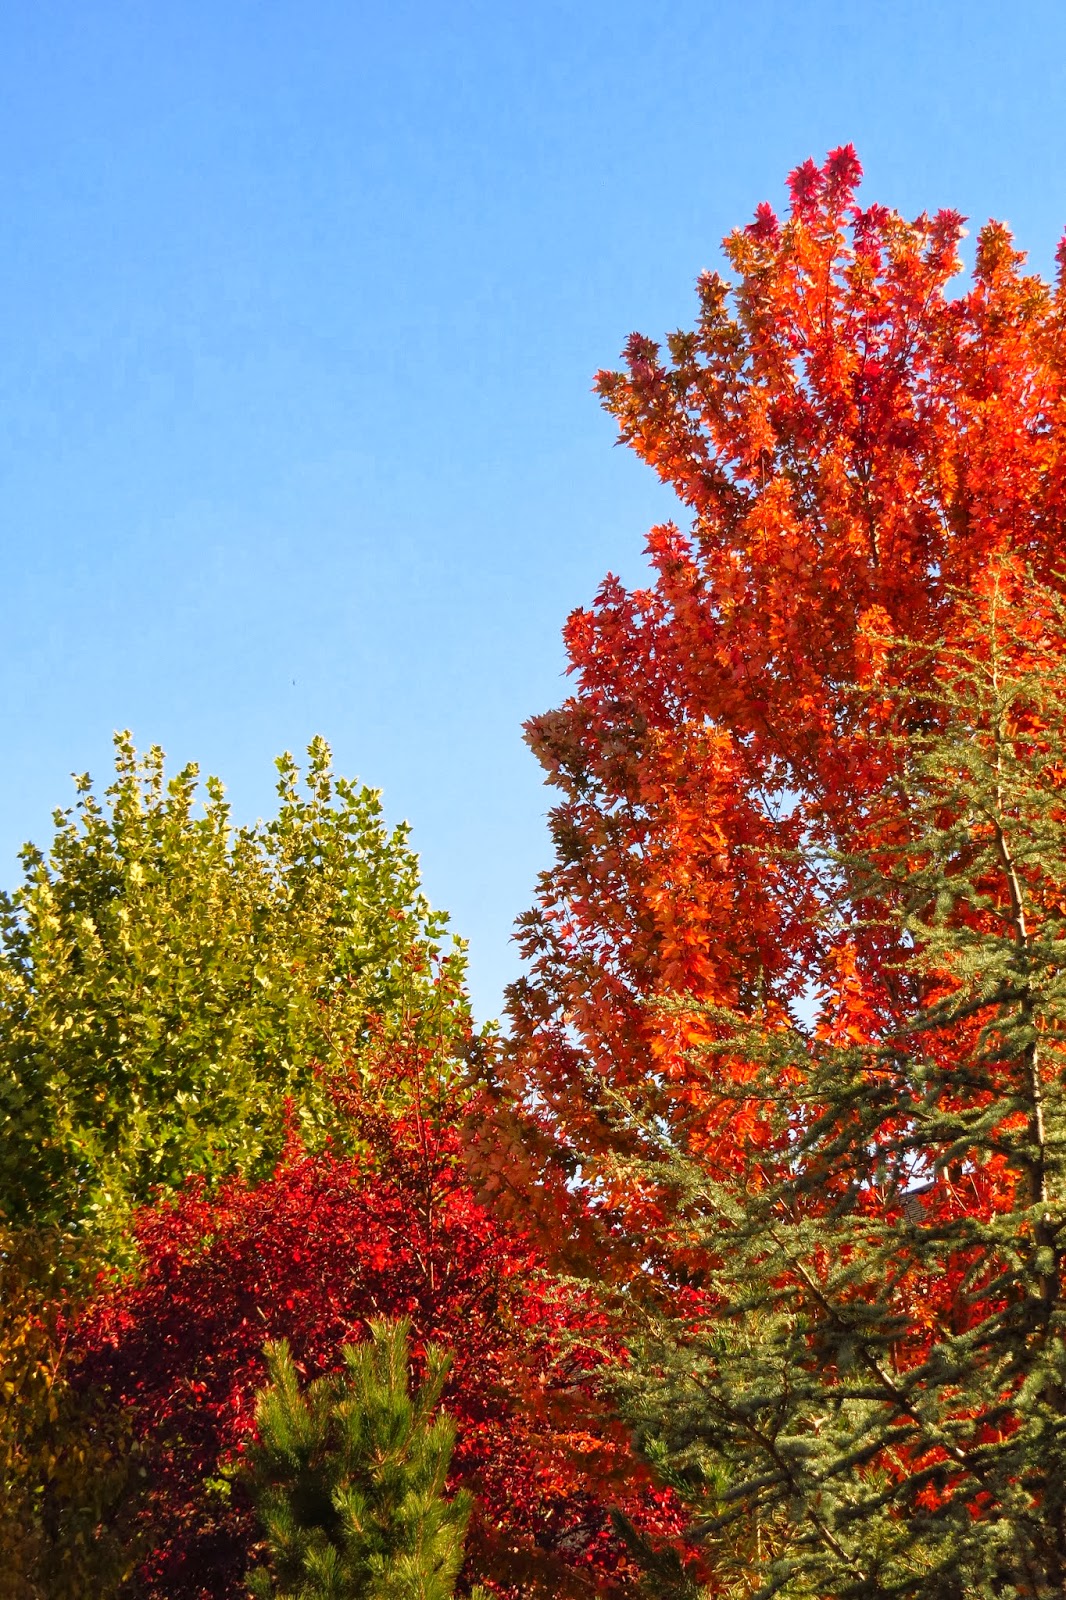 Fall trees in Idaho